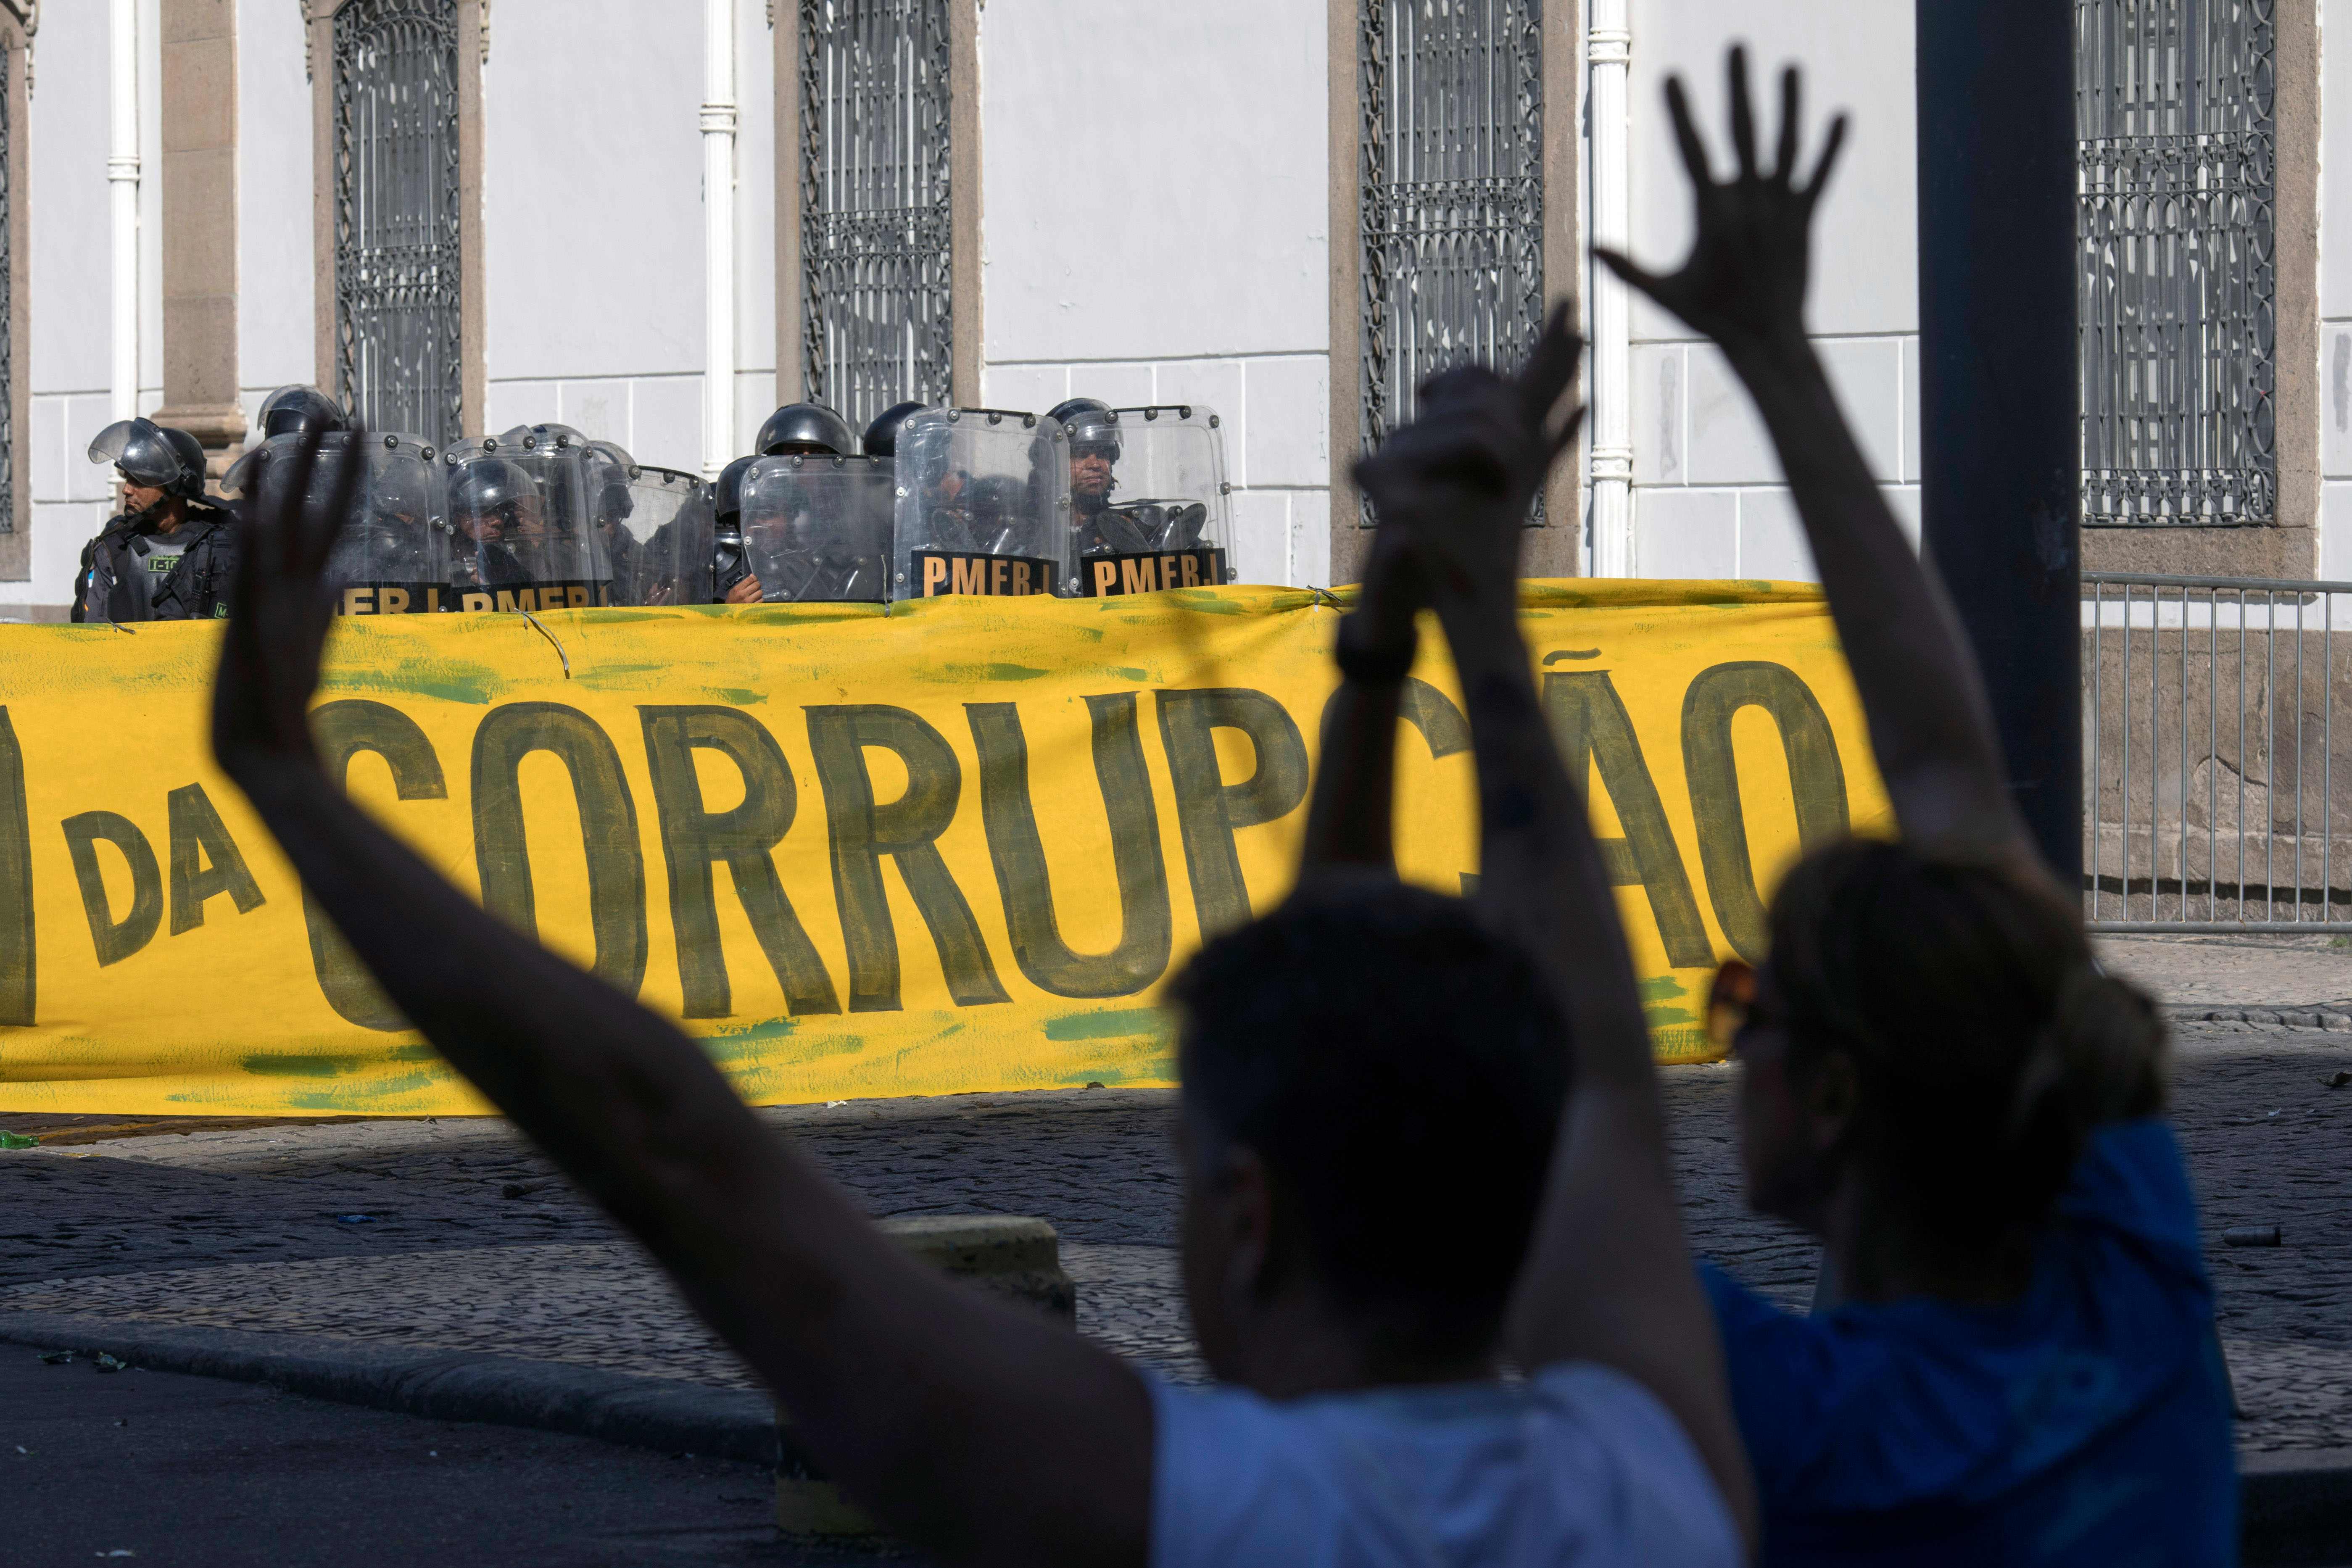 مظاهرات البرازيل